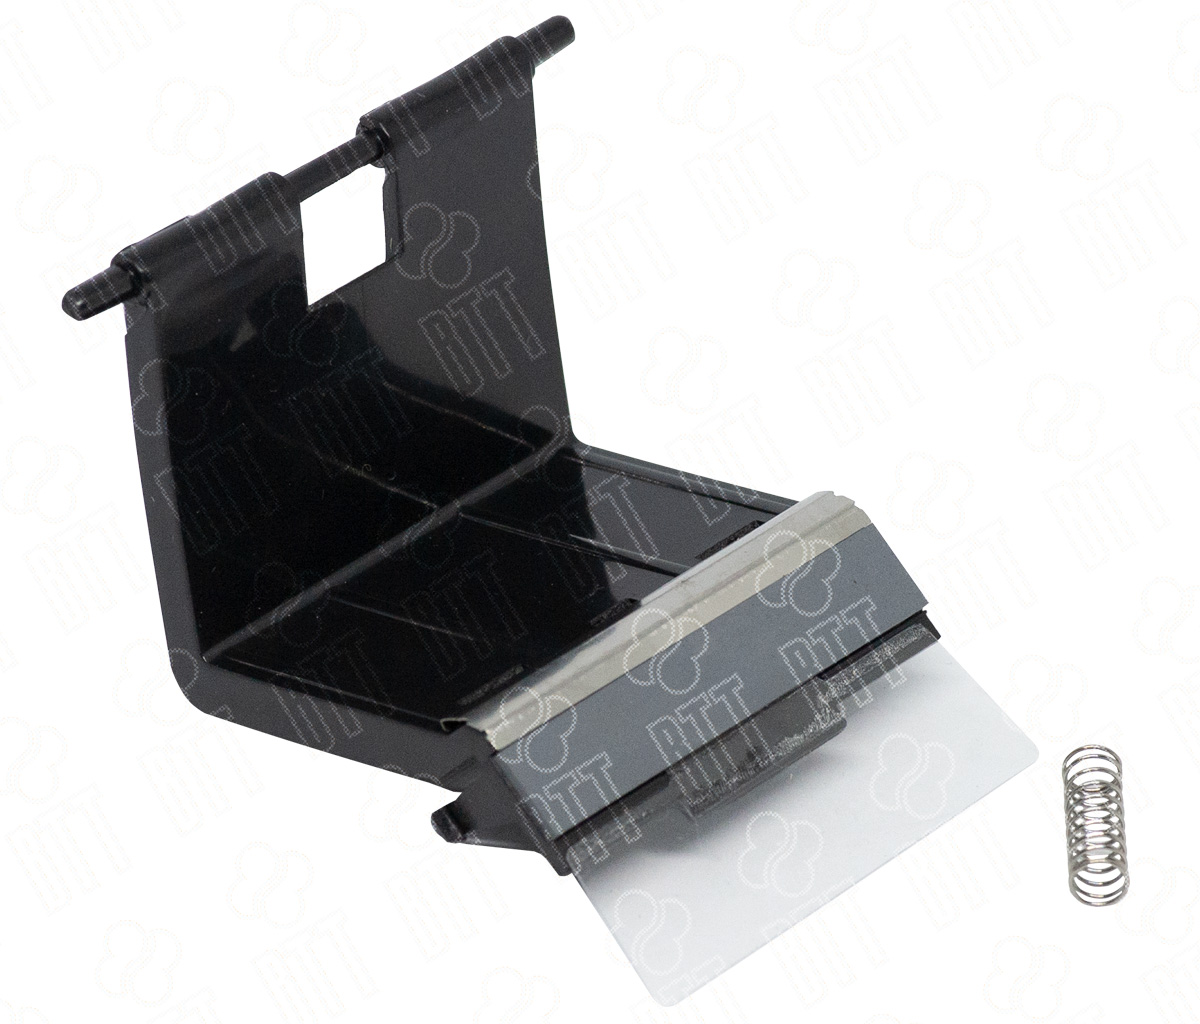 Тормозная площадка кассеты в сборе Hi-Black для Samsung ML-2250/3050/SCX-4920N/PE120 (совм)